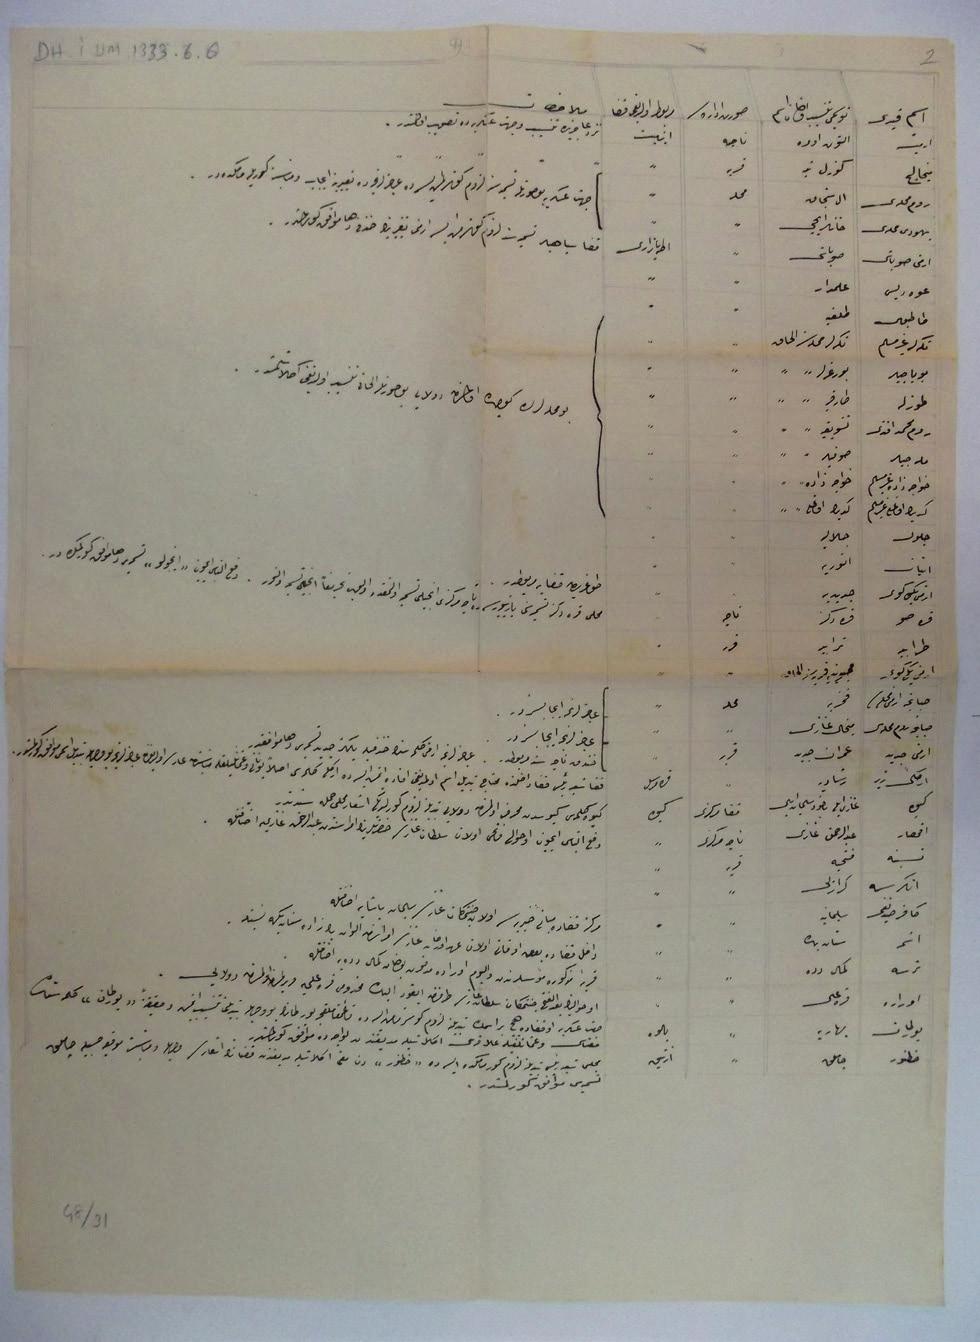 1863) İzmit Sancağı nda isimleri